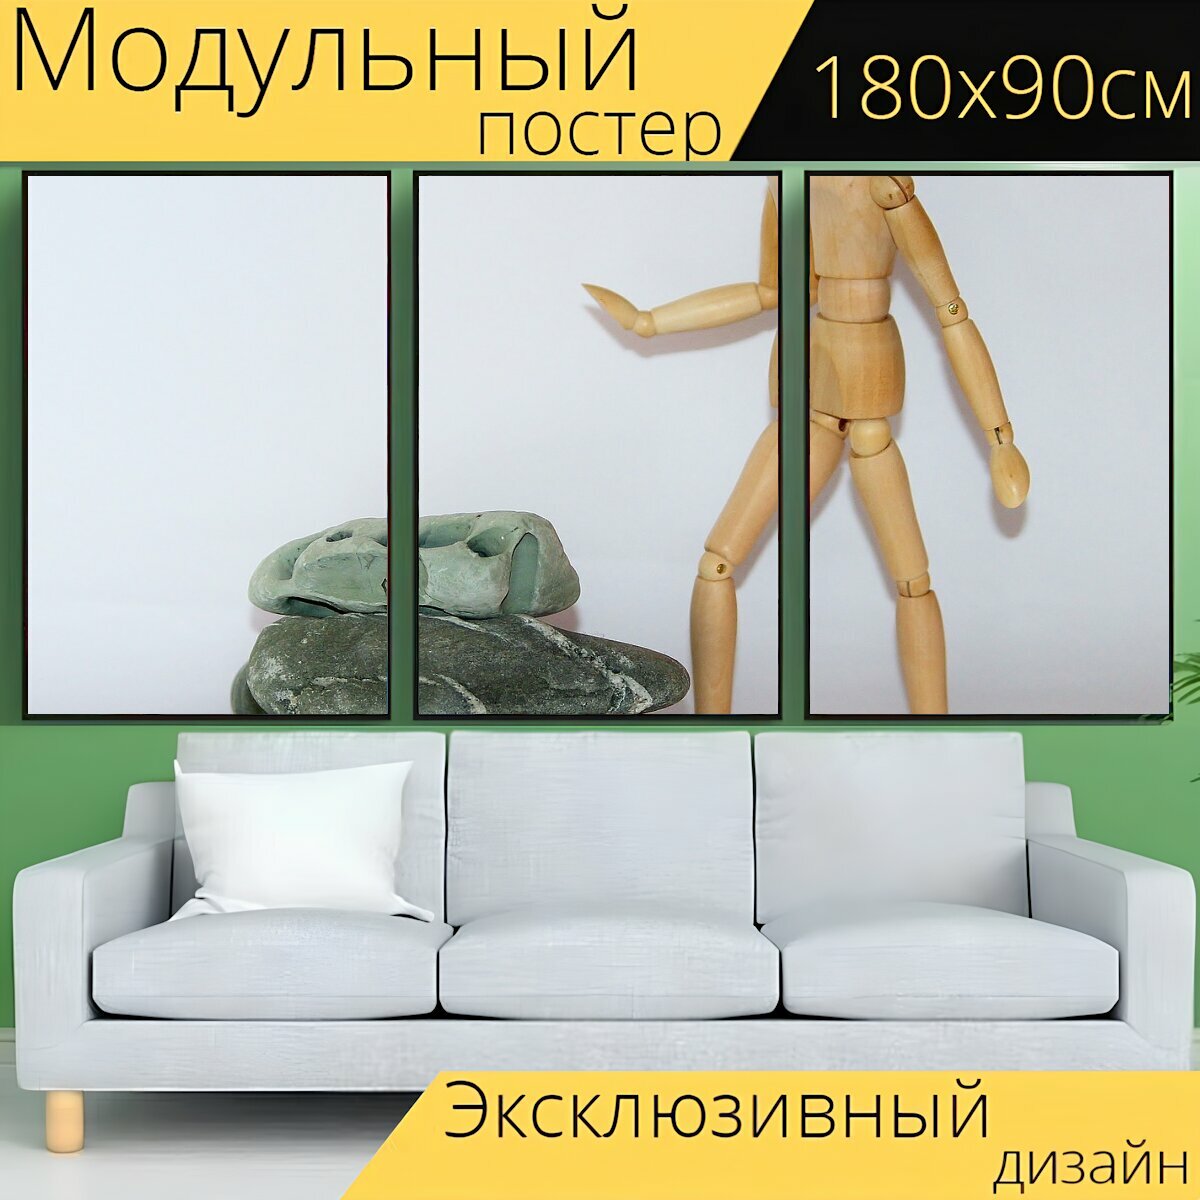 Модульный постер "Деревянная фигура, сопротивление, сложности" 180 x 90 см. для интерьера